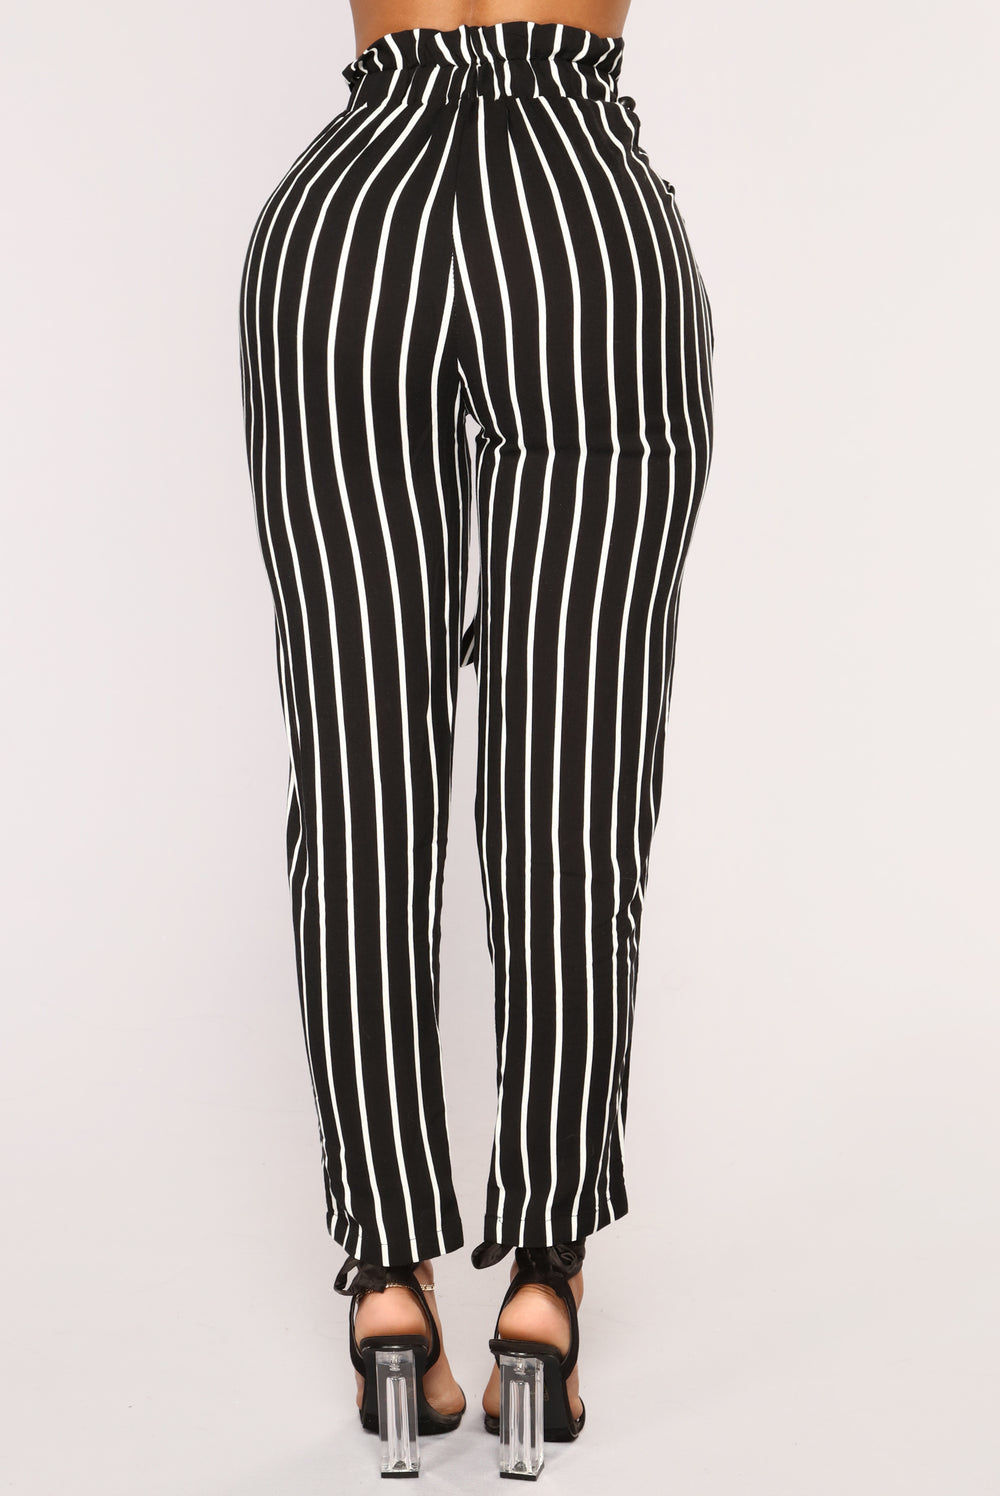 Jacklyn Stripe Pants - Black/White